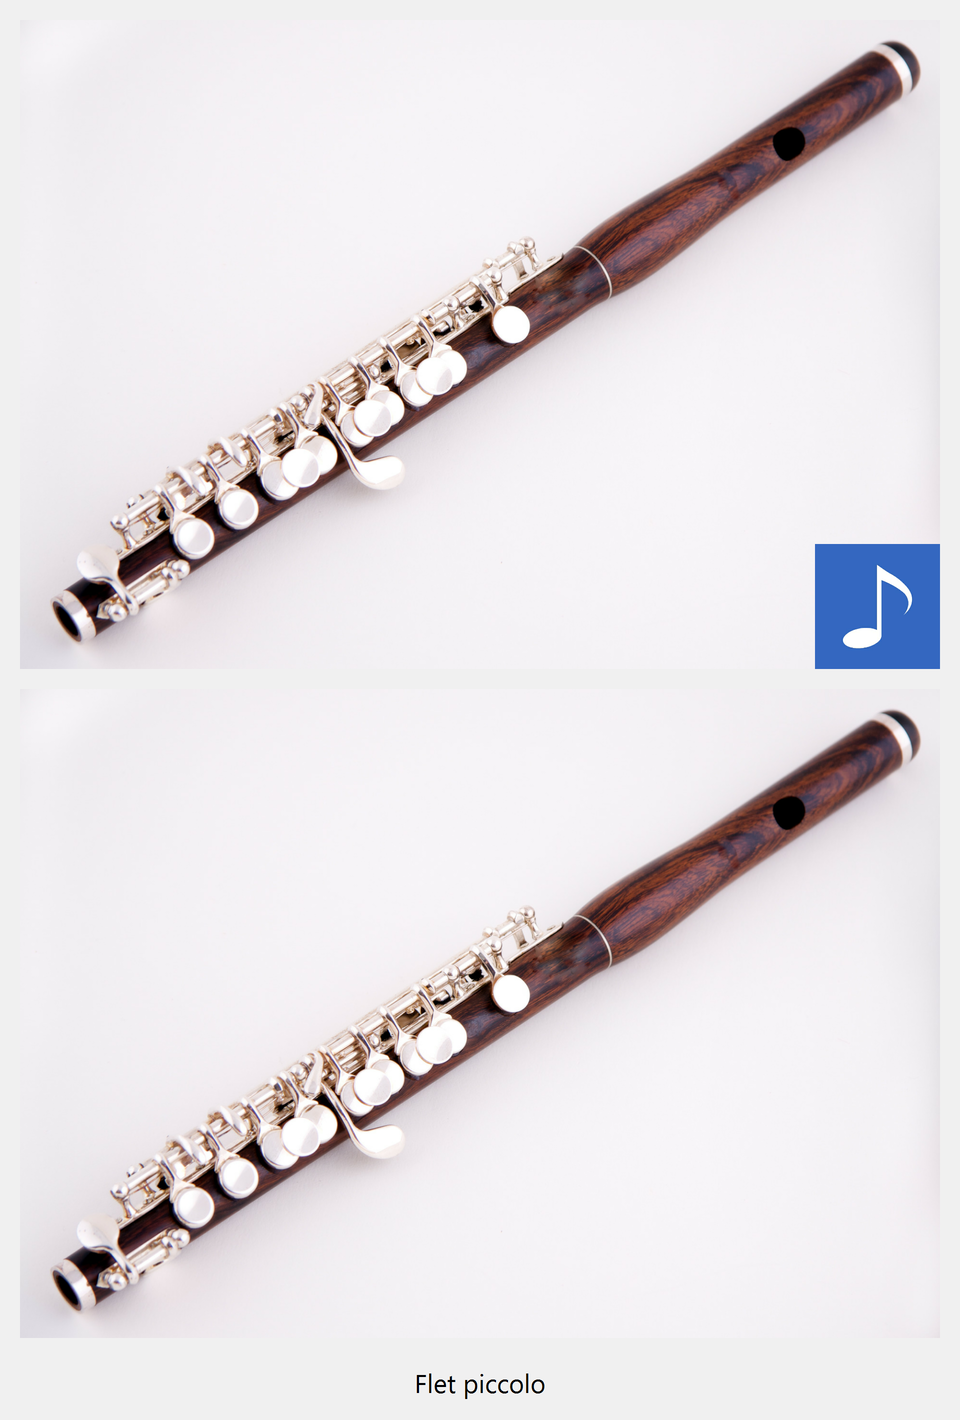 Ilustracja interaktywna przedstawia flet piccolo. Na zdjęciu ukazany jest drewniany, podłużny instrument z metalowymi klapkami. Po naciśnięciu punktu aktywnego wyświetla się napis flet piccolo i zostaje odtworzona próbka brzmienia. Flet piccolo brzmi bardzo jasno, trochę piskliwie, niektóre dźwięki są bardzo wysokie.